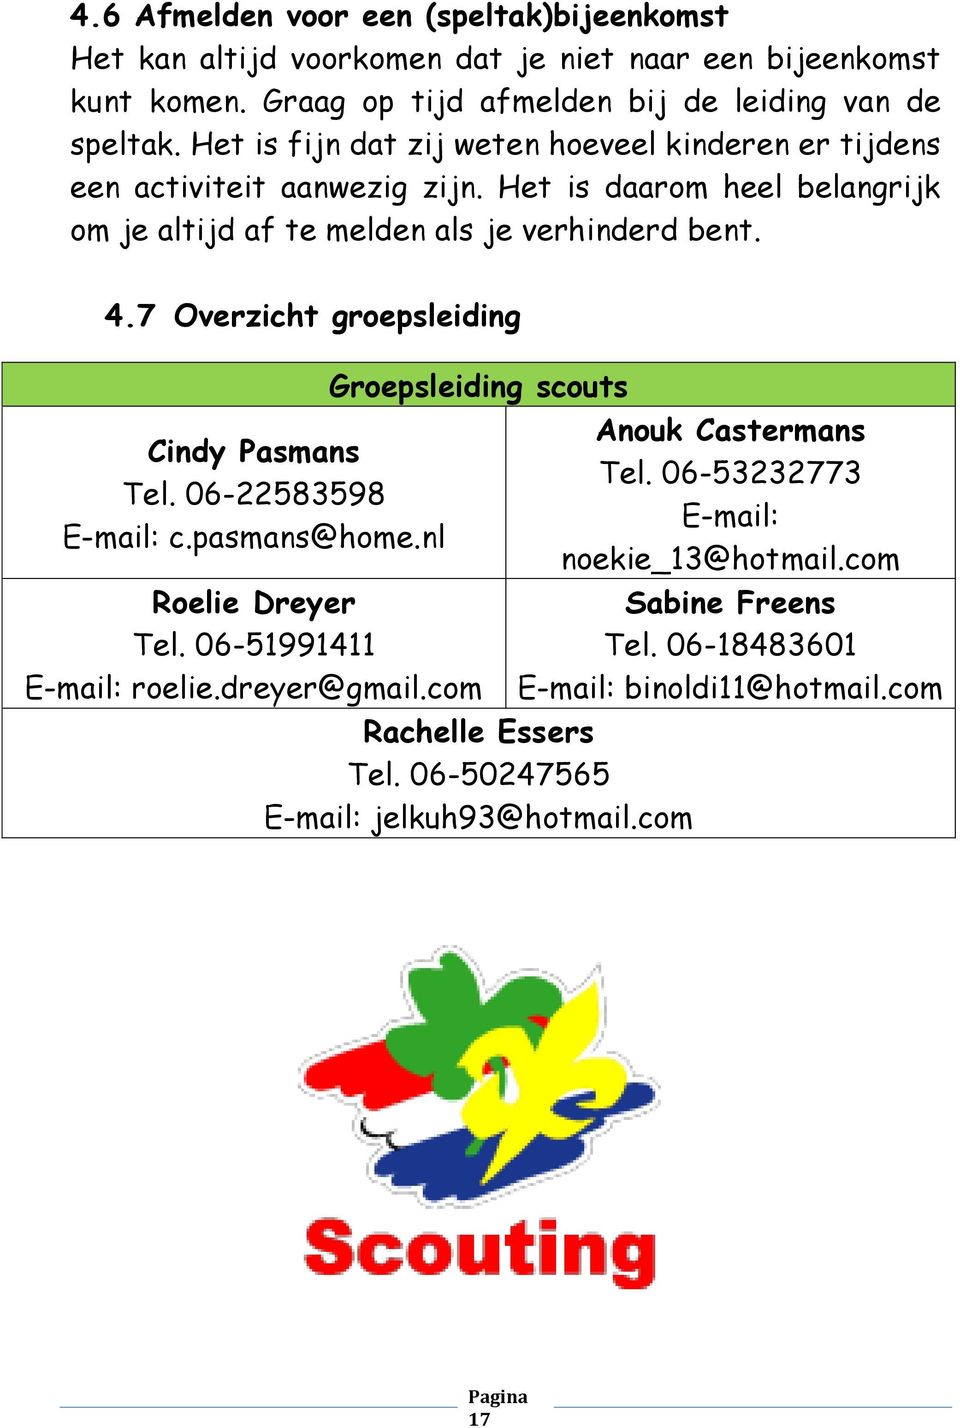 7 Overzicht groepsleiding Cindy Pasmans Tel. 06-22583598 E-mail: c.pasmans@home.nl Groepsleiding scouts Anouk Castermans Tel. 06-53232773 E-mail: noekie_13@hotmail.